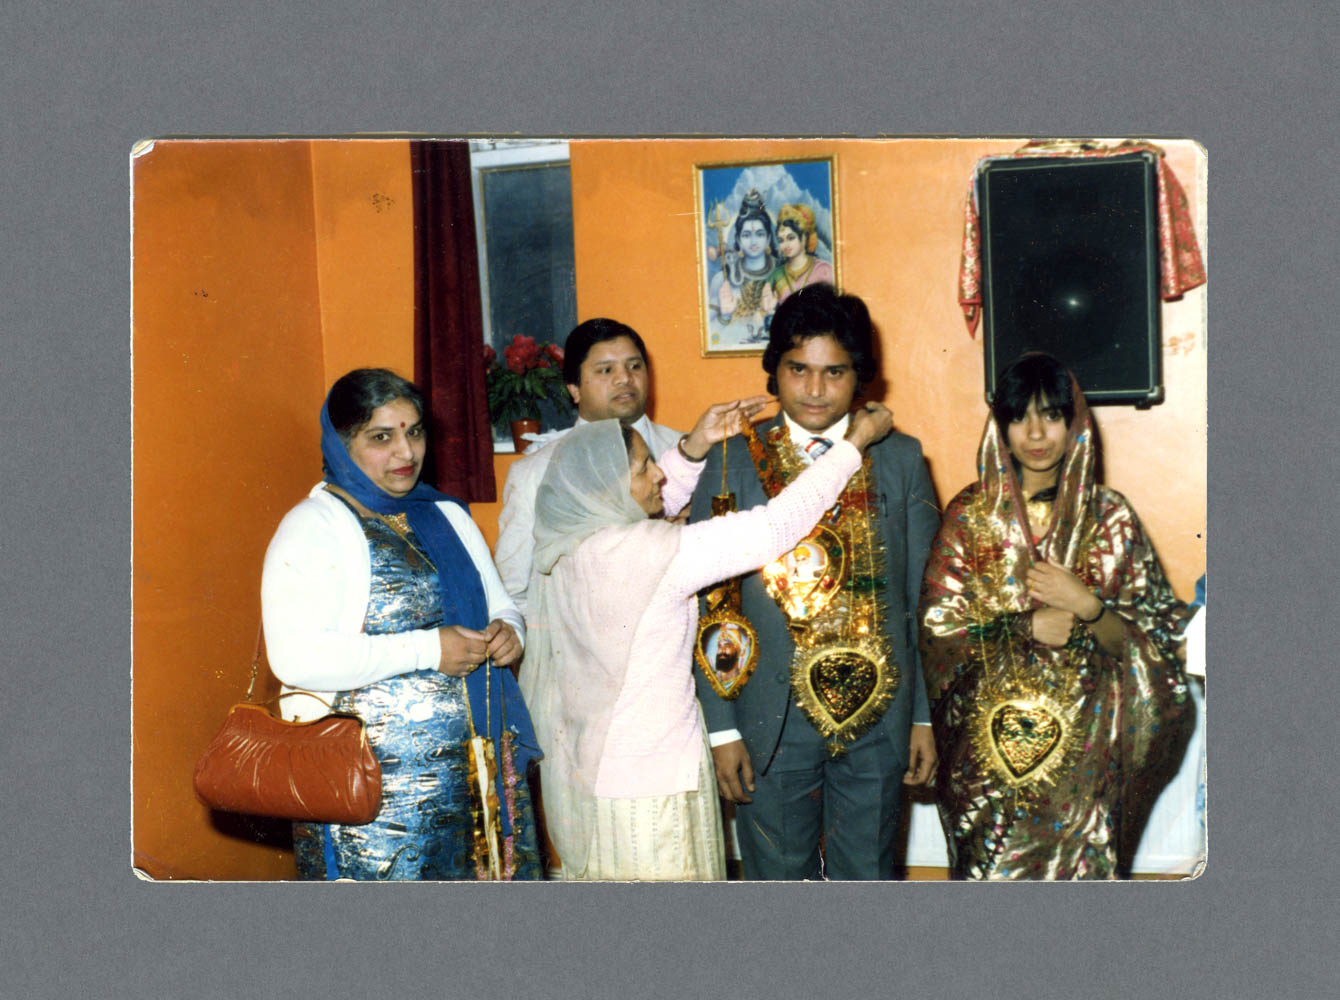 Shri Dhurga Bhawan, Wellington Rd. c.1988